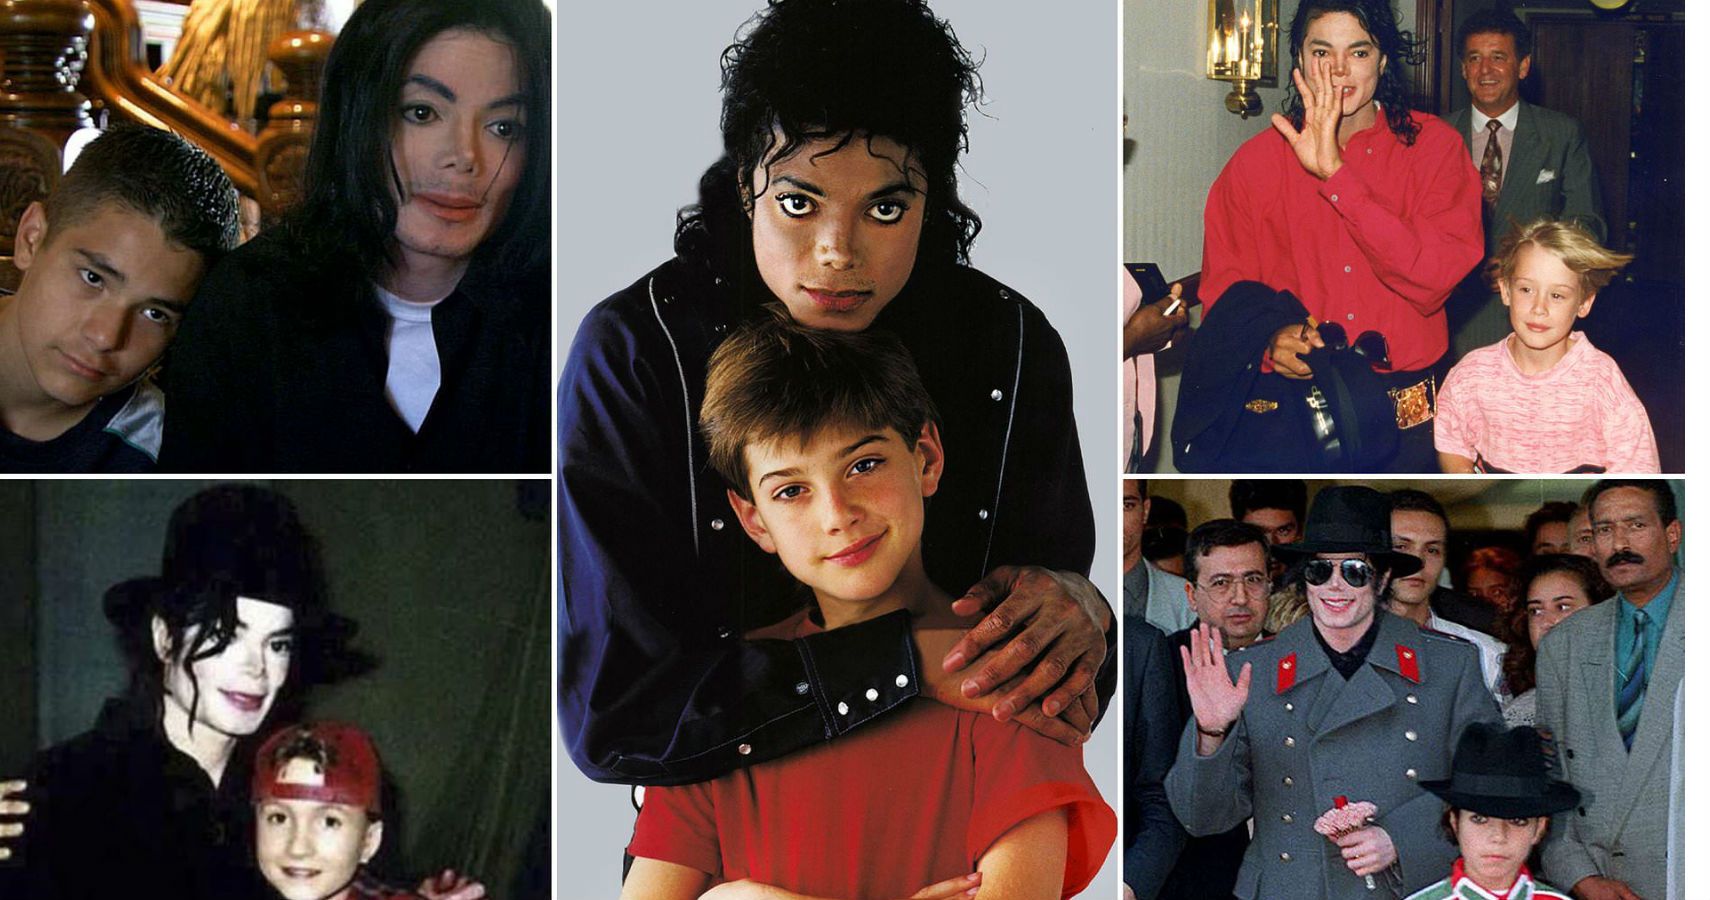 Michael Jackson Kid Vs Adult